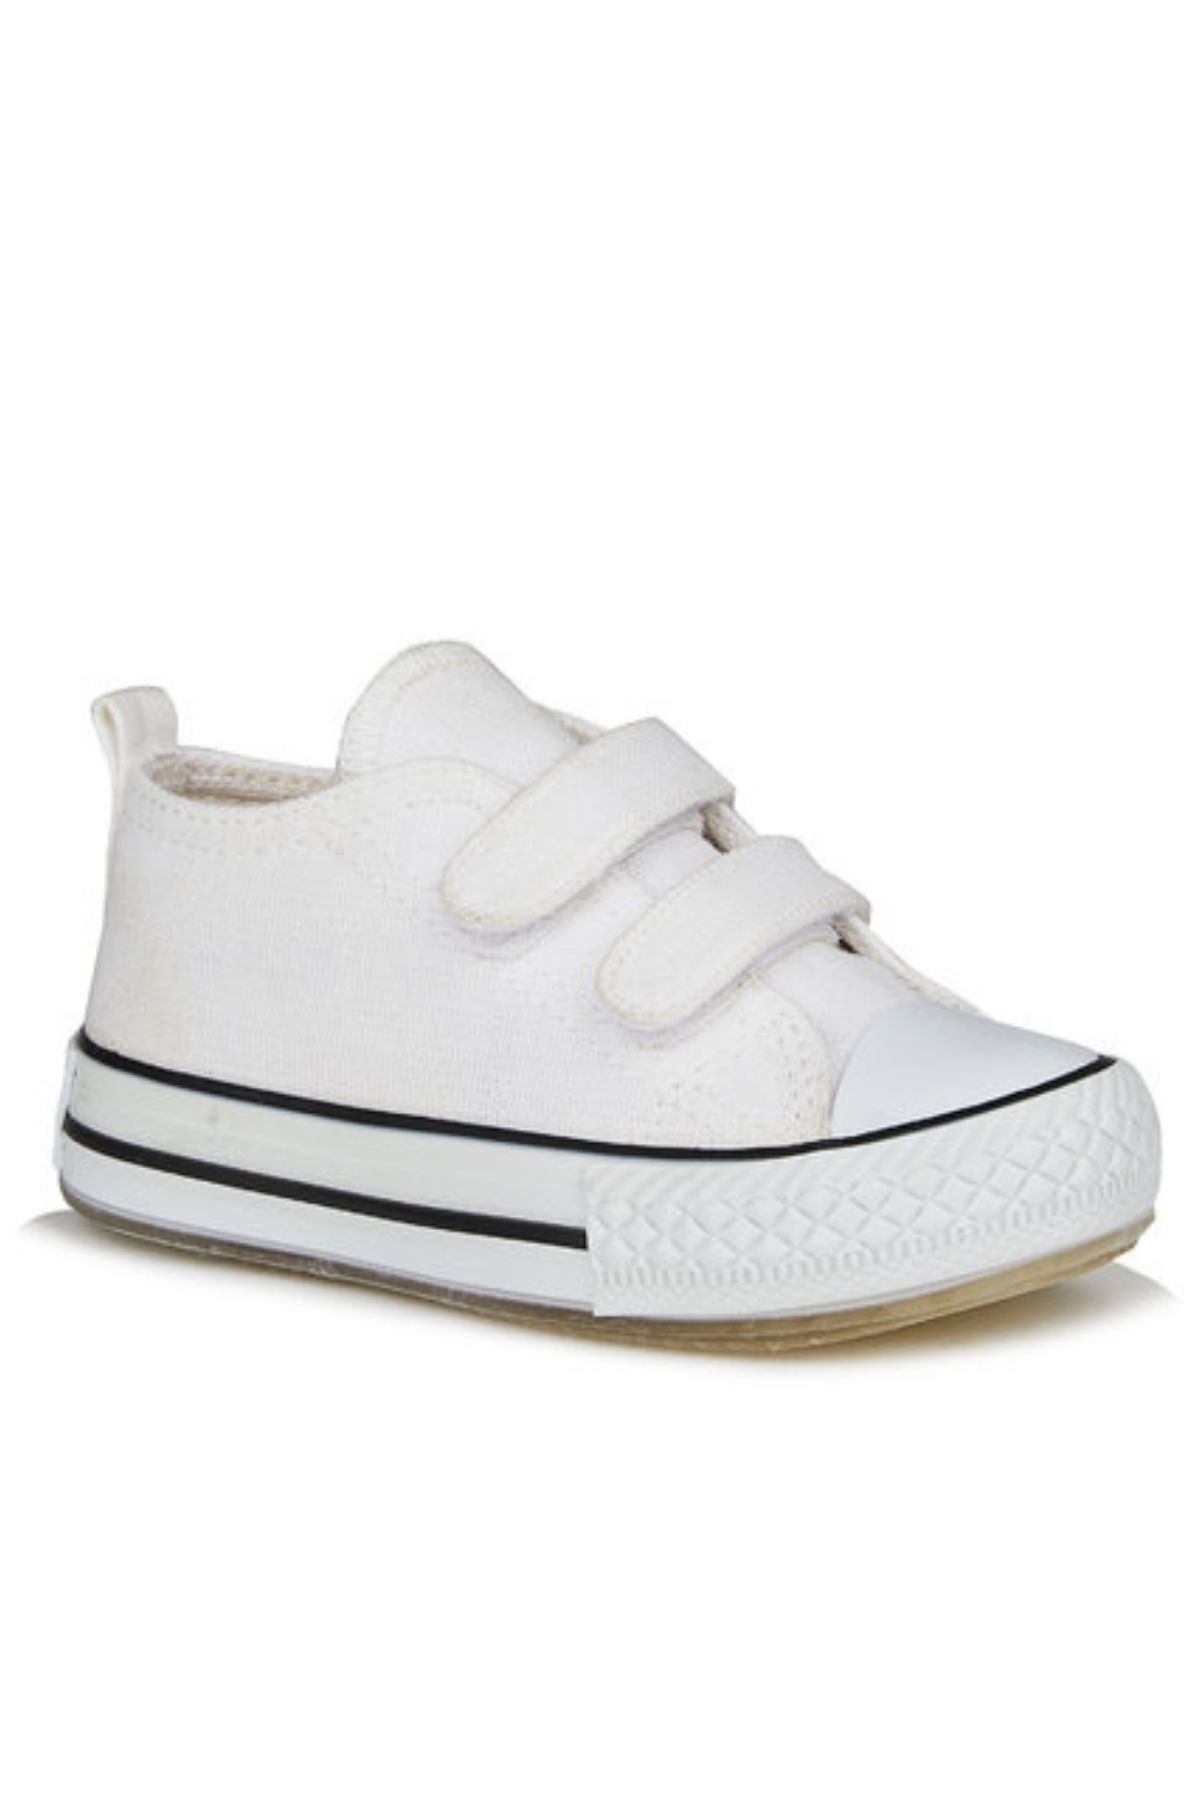 Vicco Pino Kız / Erkek Çocuk Işıklı Beyaz Sneaker Bebe Patik Spor Ayakkabı 925.p20y.150 / 925.b20y.150